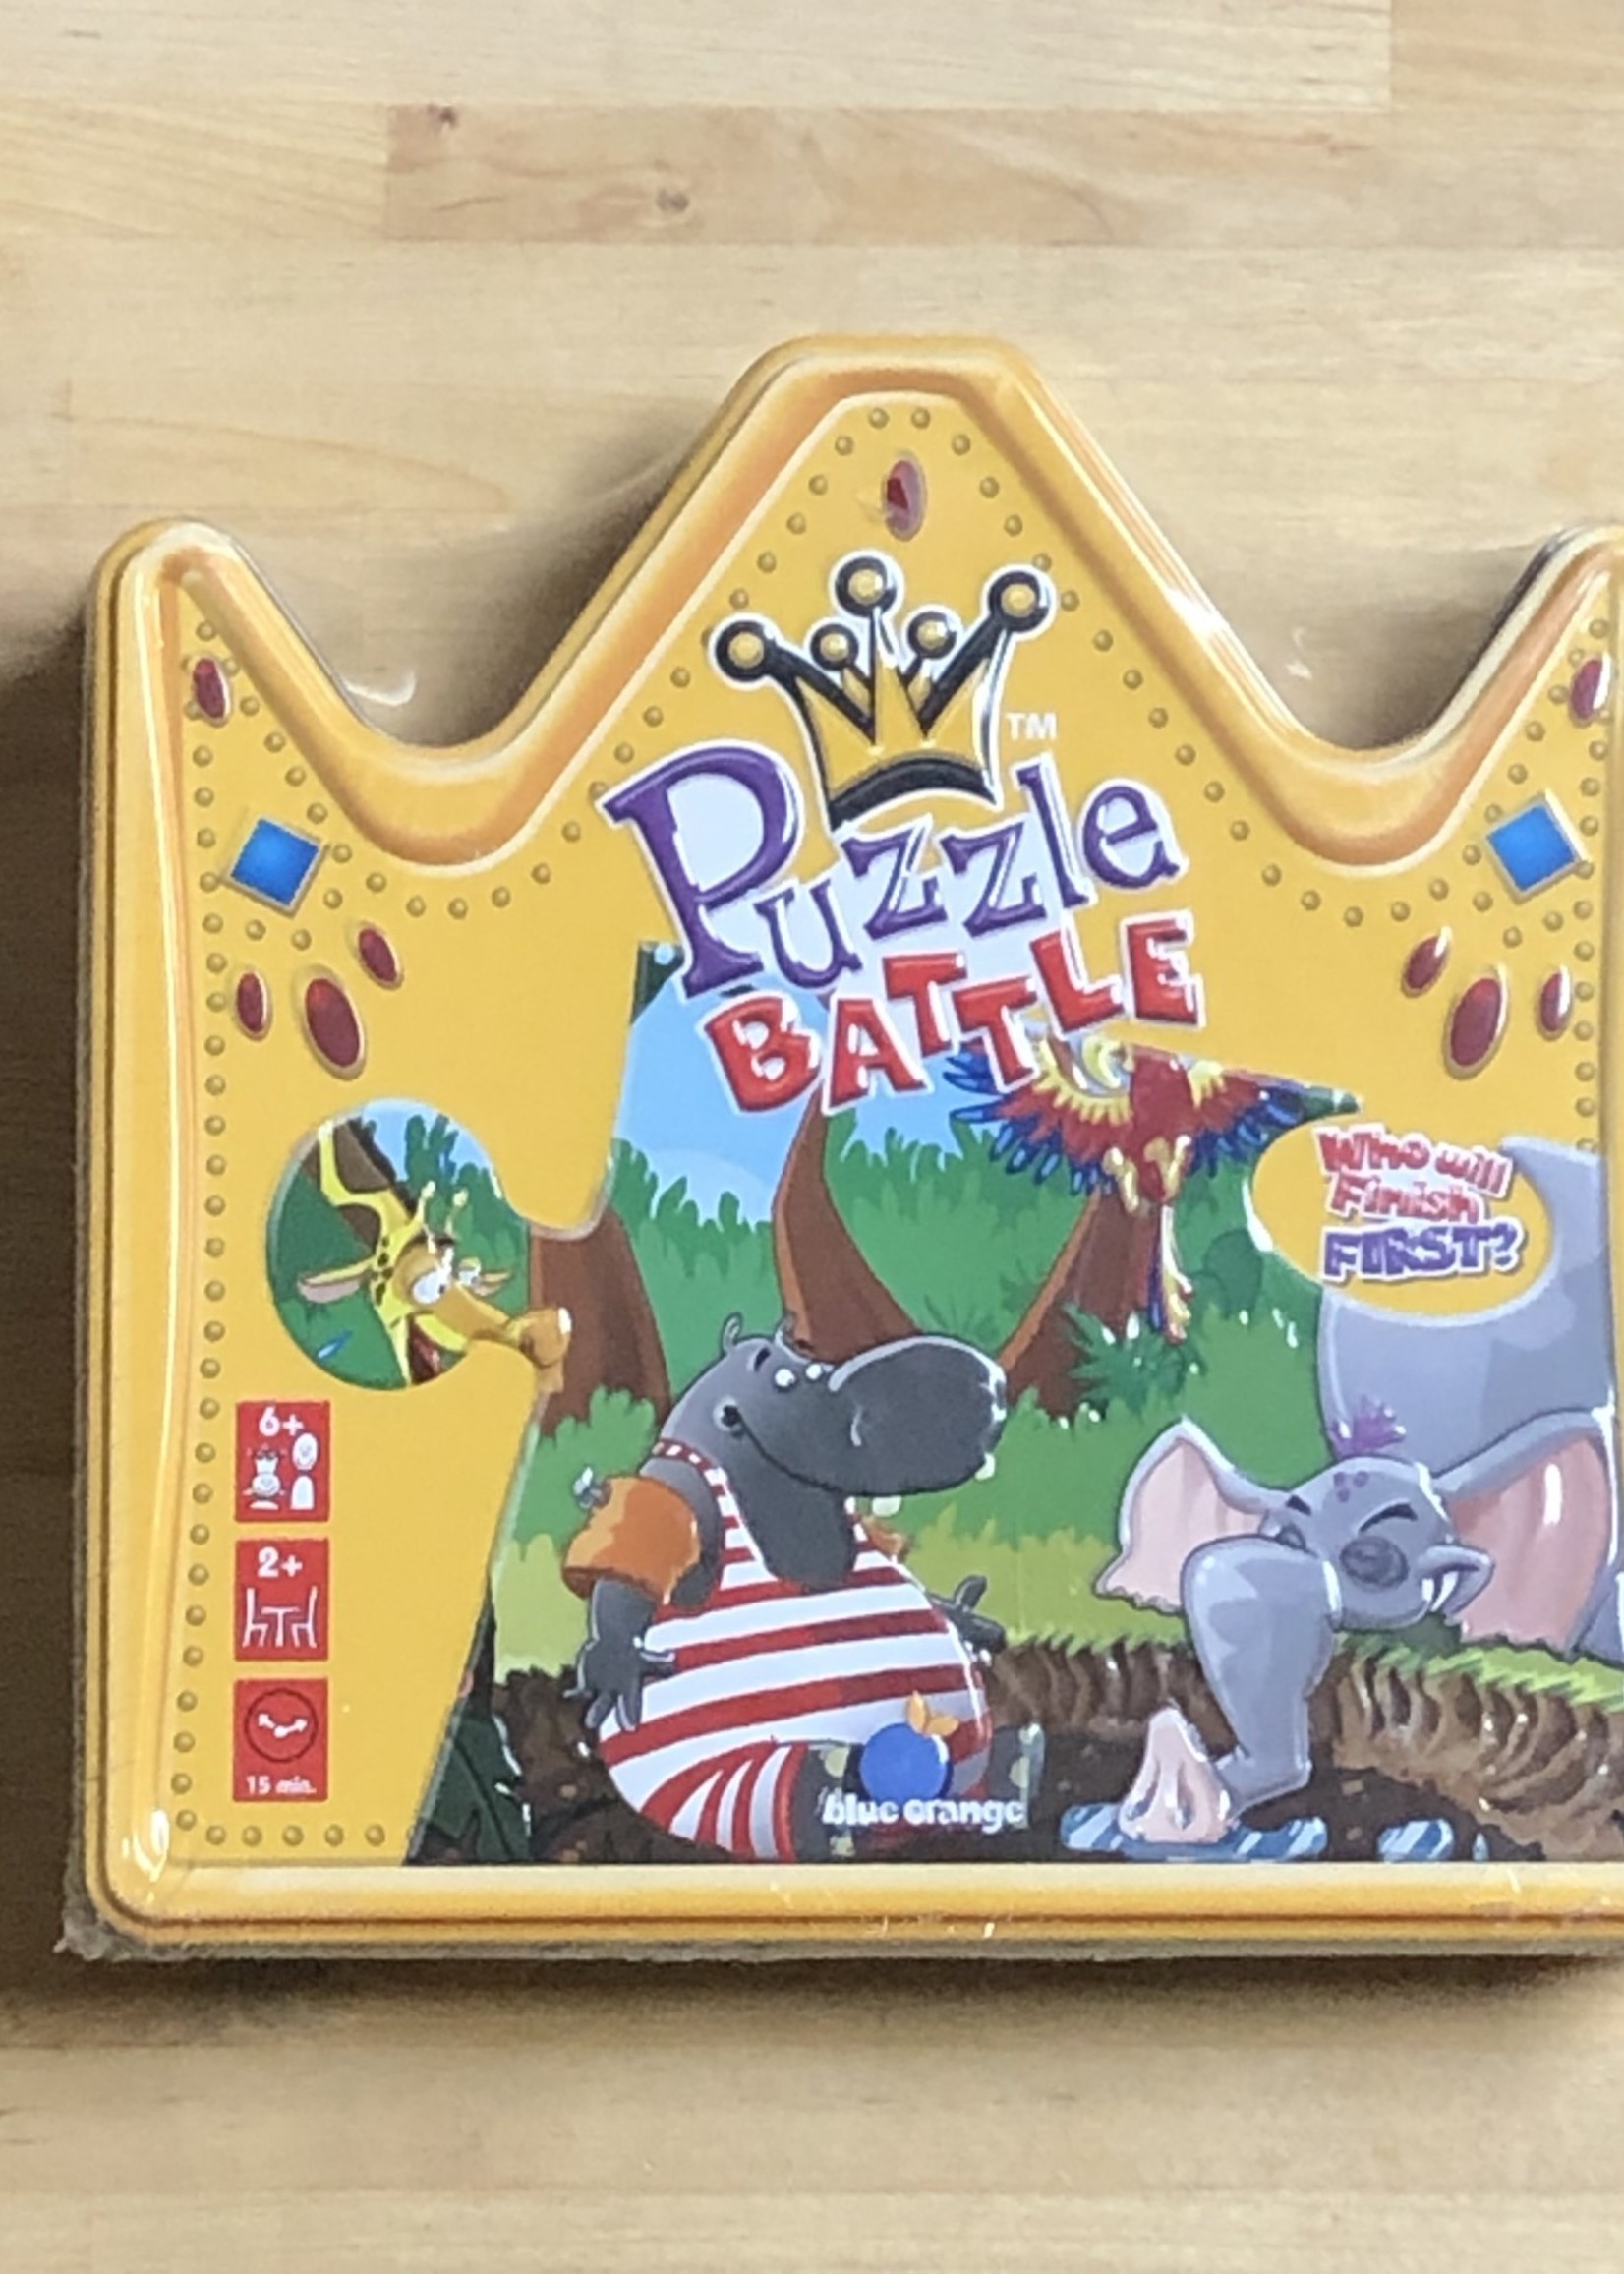 Game - Puzzle Battle